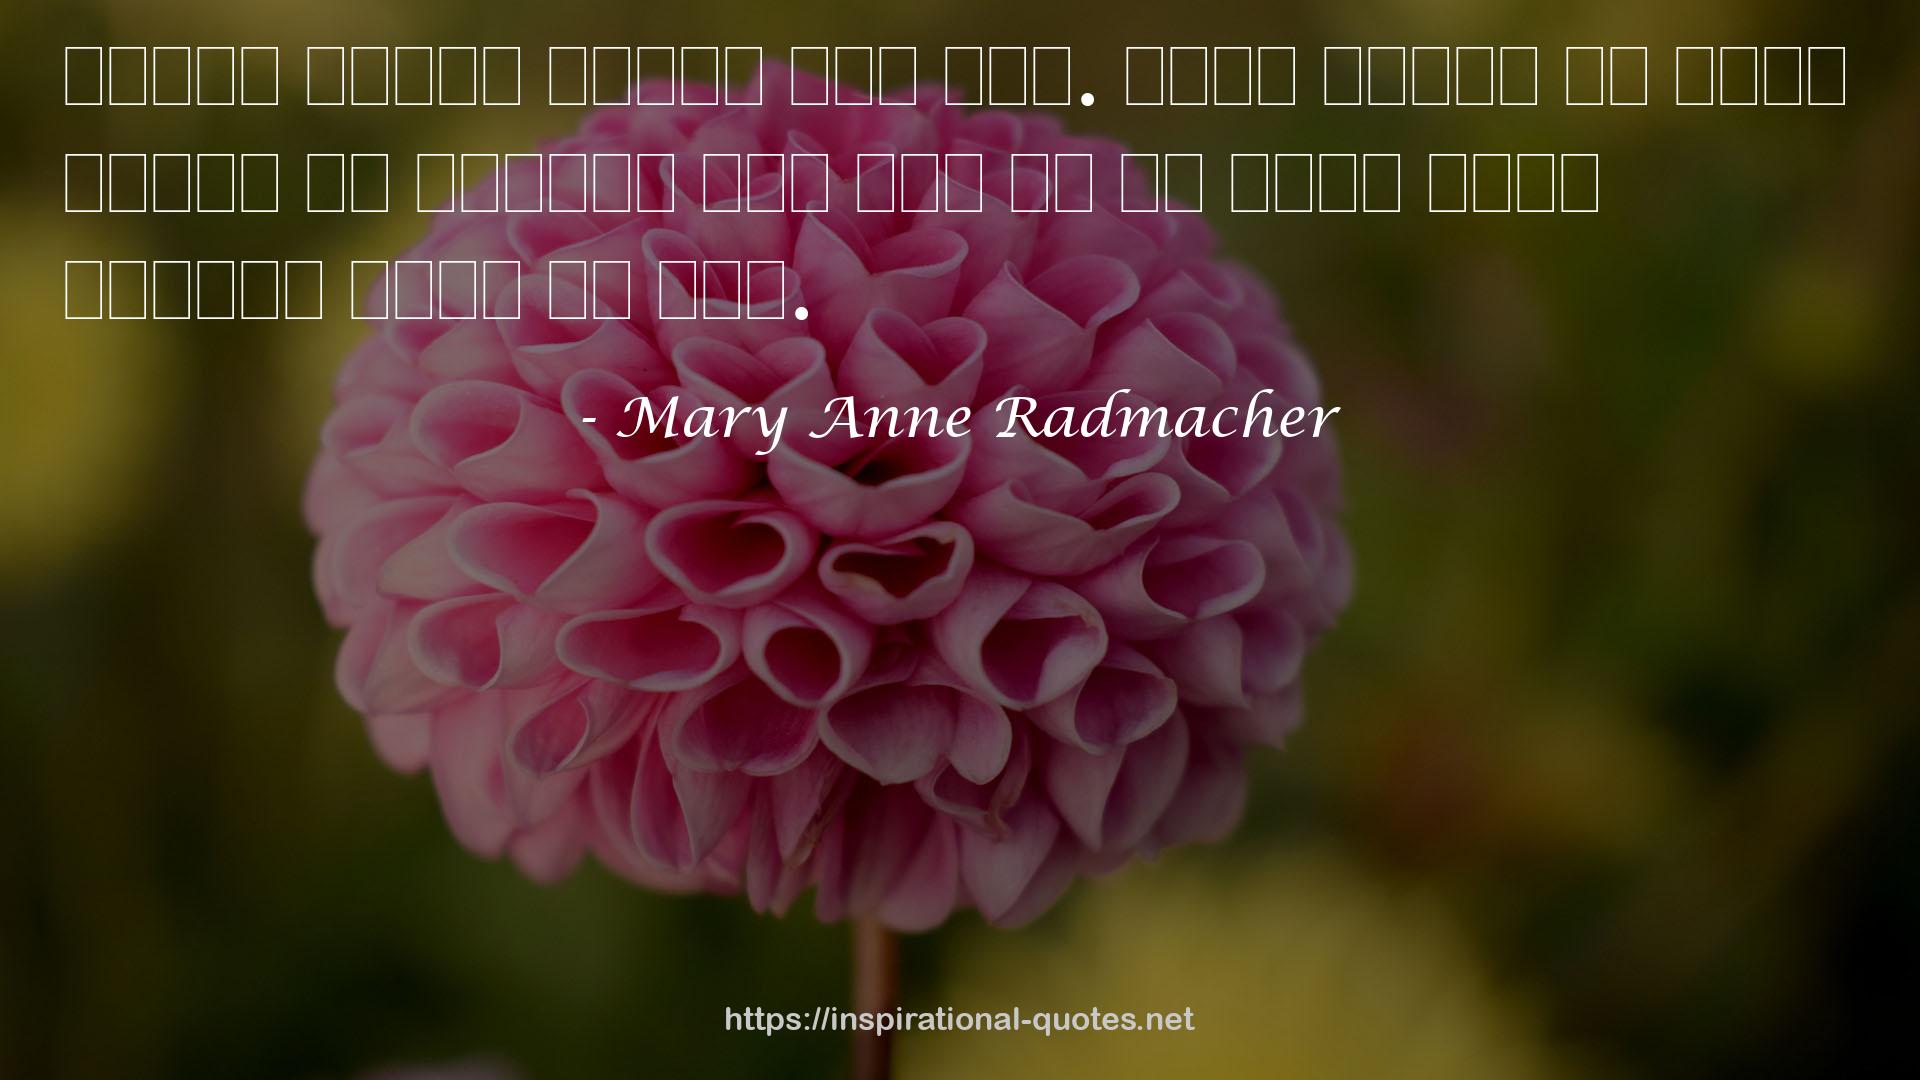 Mary Anne Radmacher QUOTES